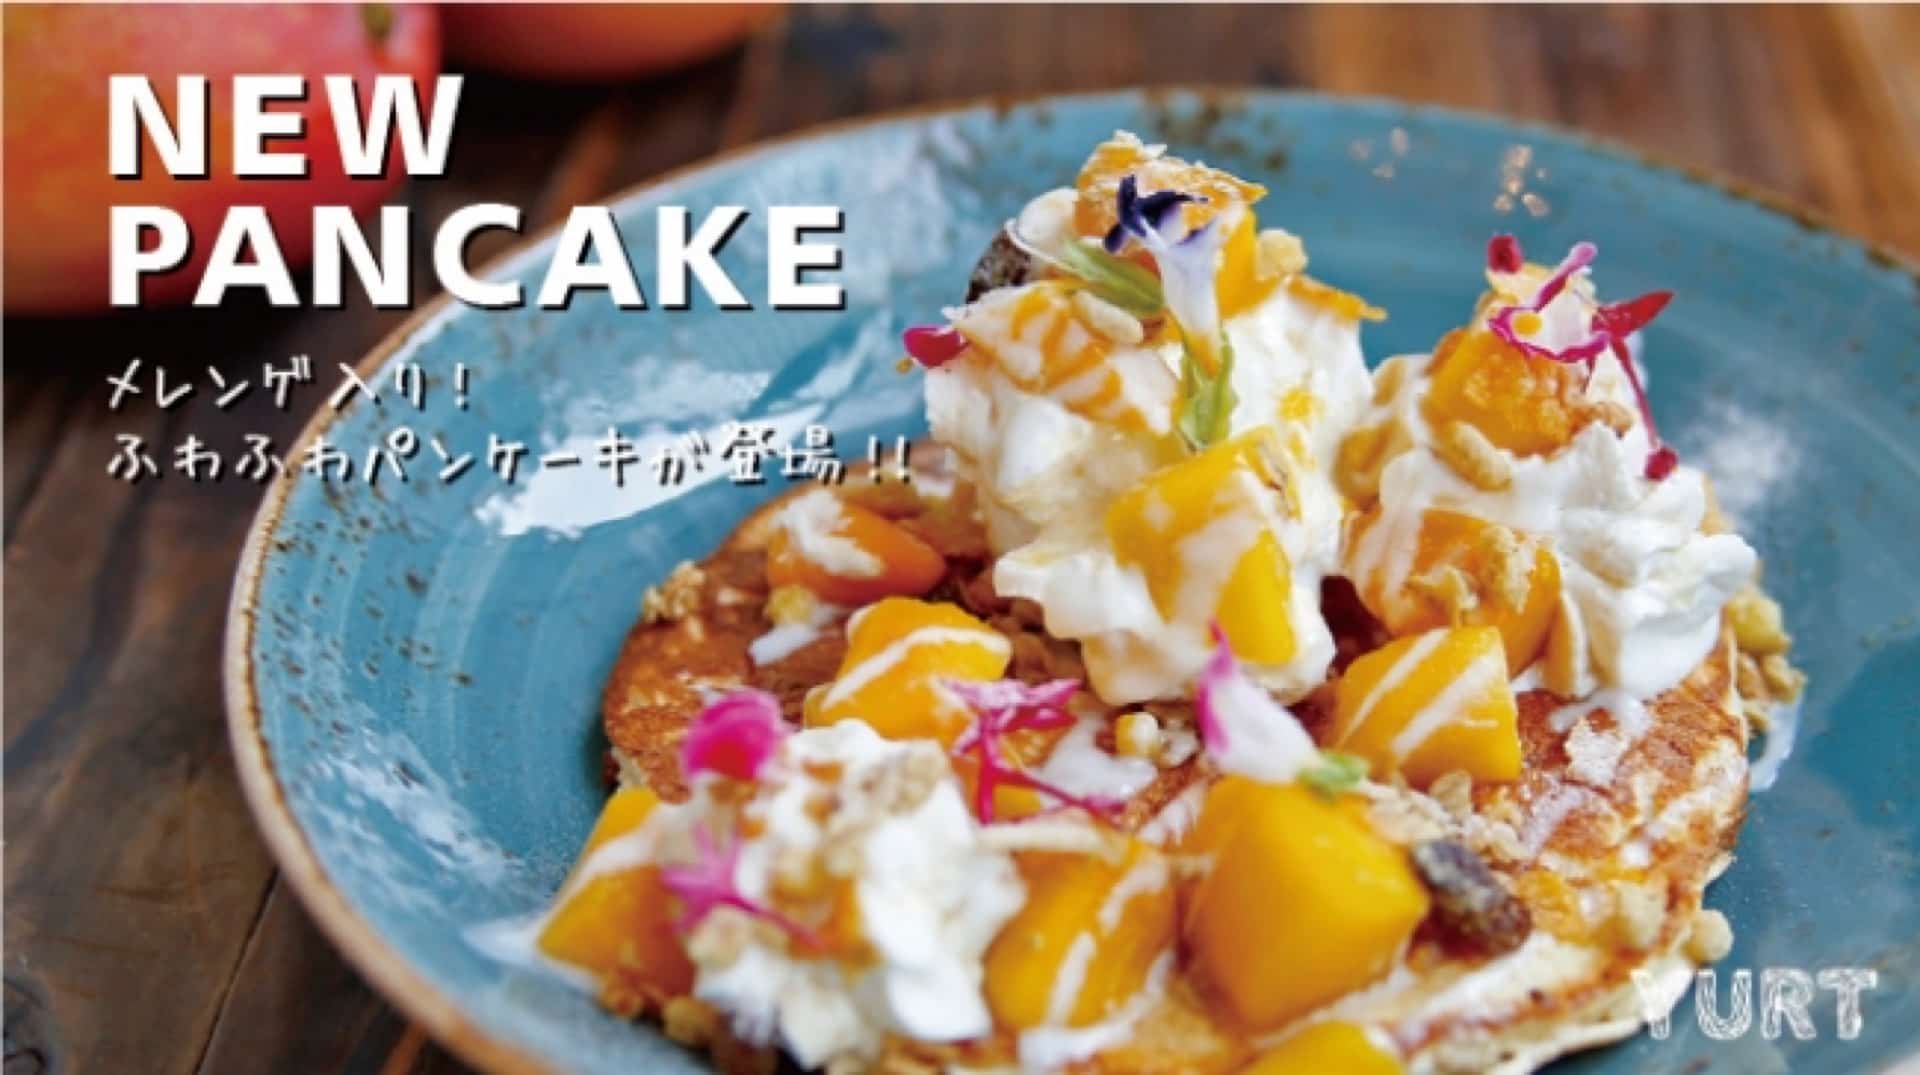 夜カフェにも嬉しいスイーツ Yurt神戸店 にメレンゲパンケーキが新たに4種類登場